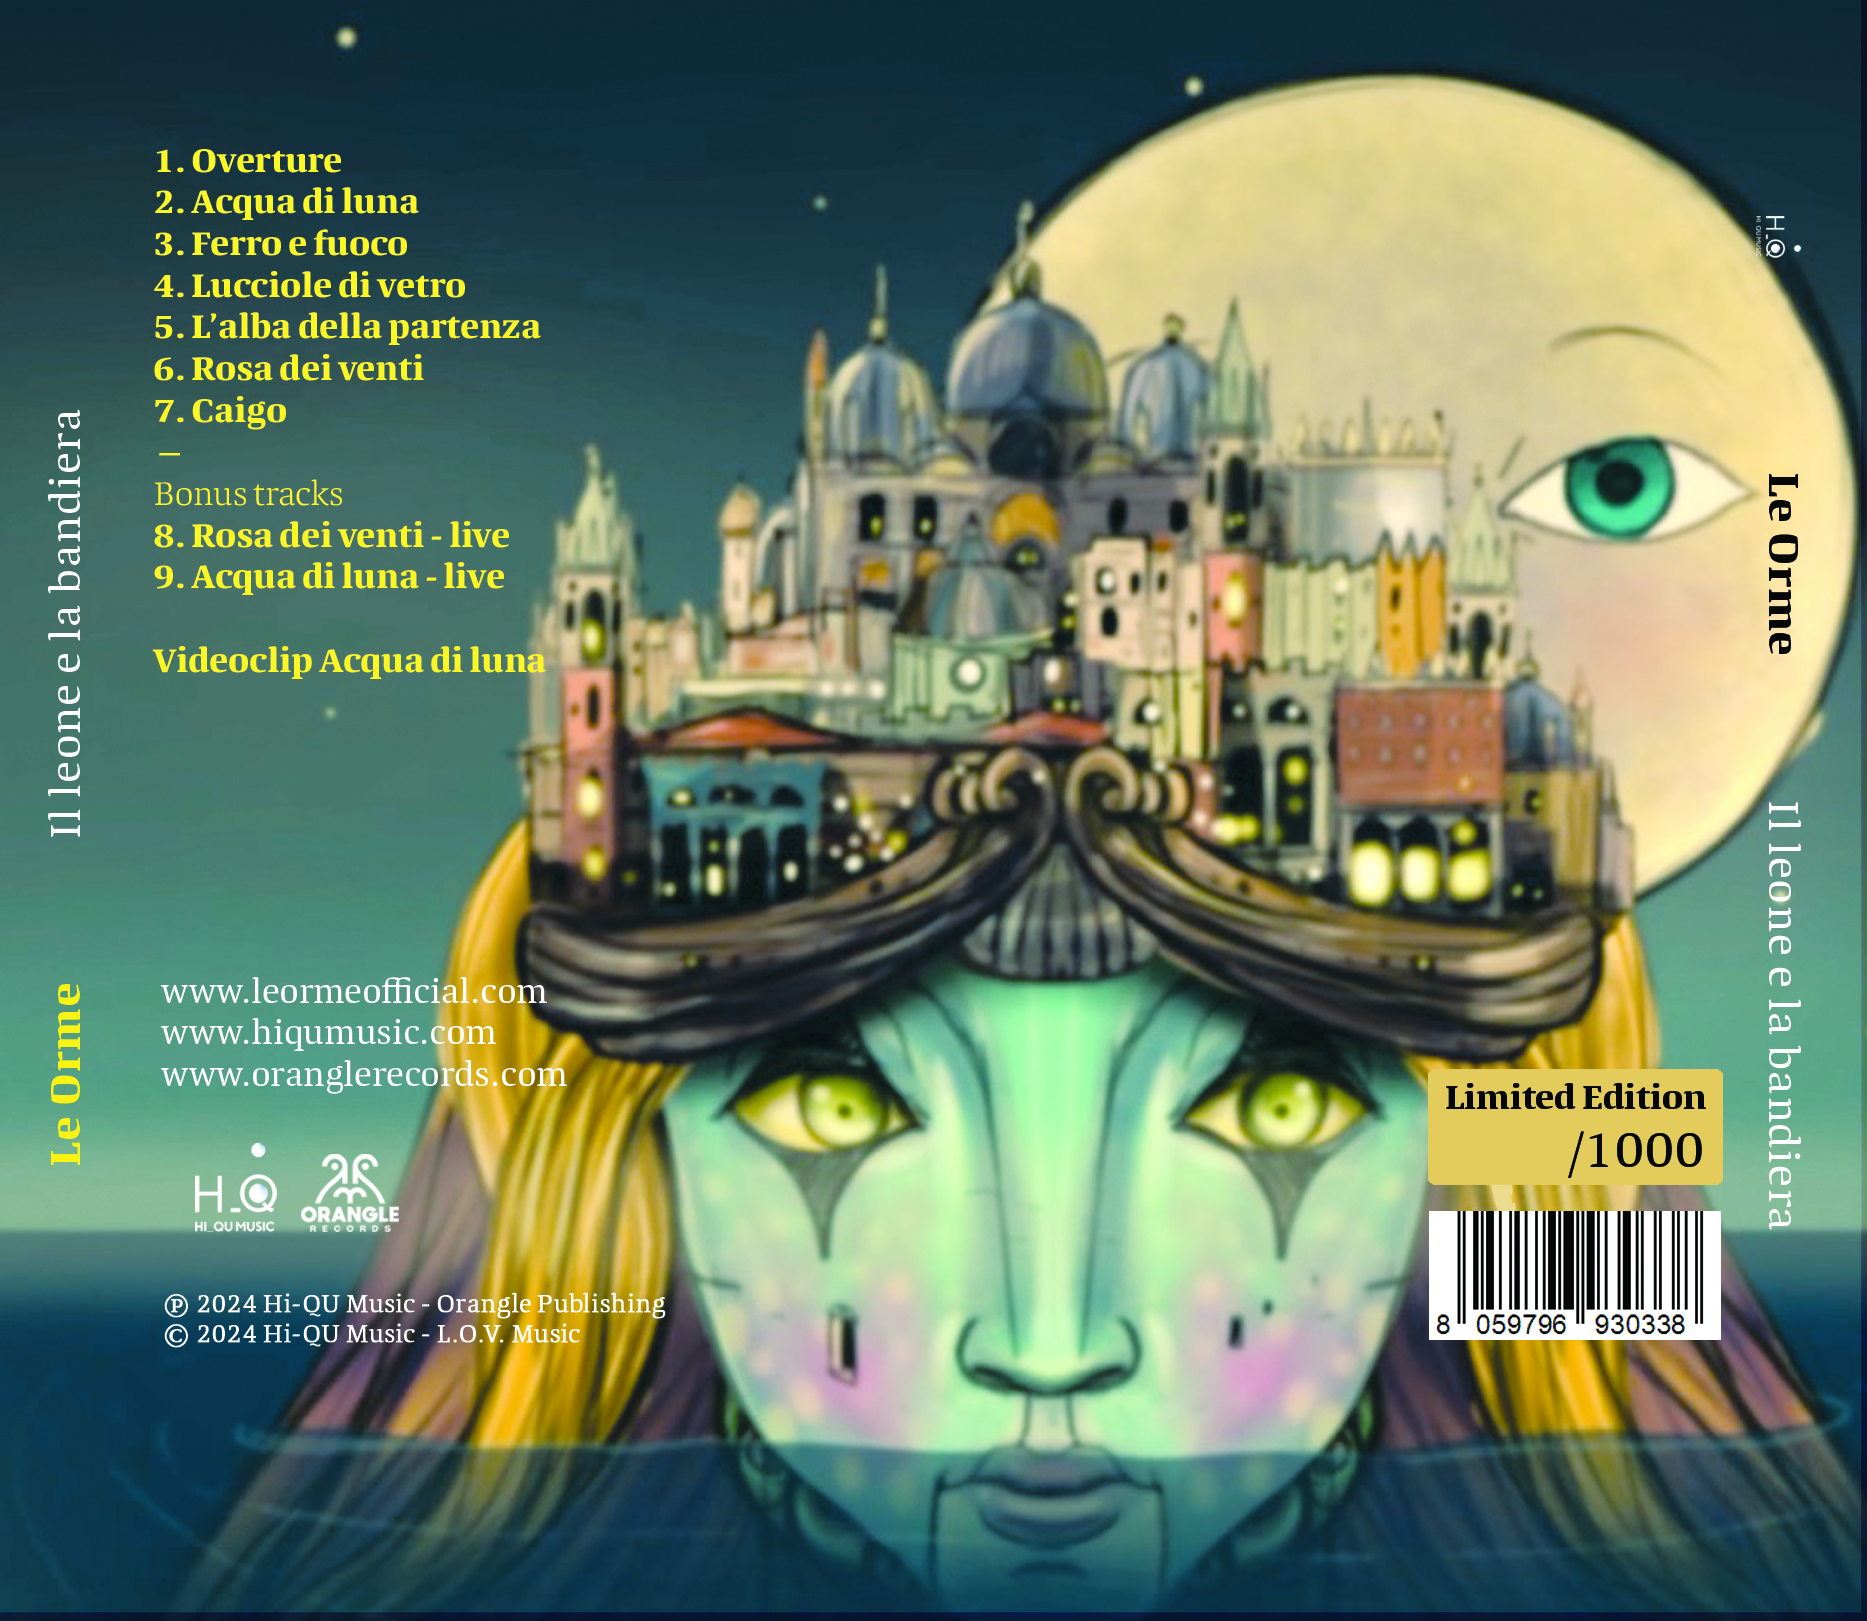 Il leone e la bandiera – Le Orme (CD) – Limited Edition